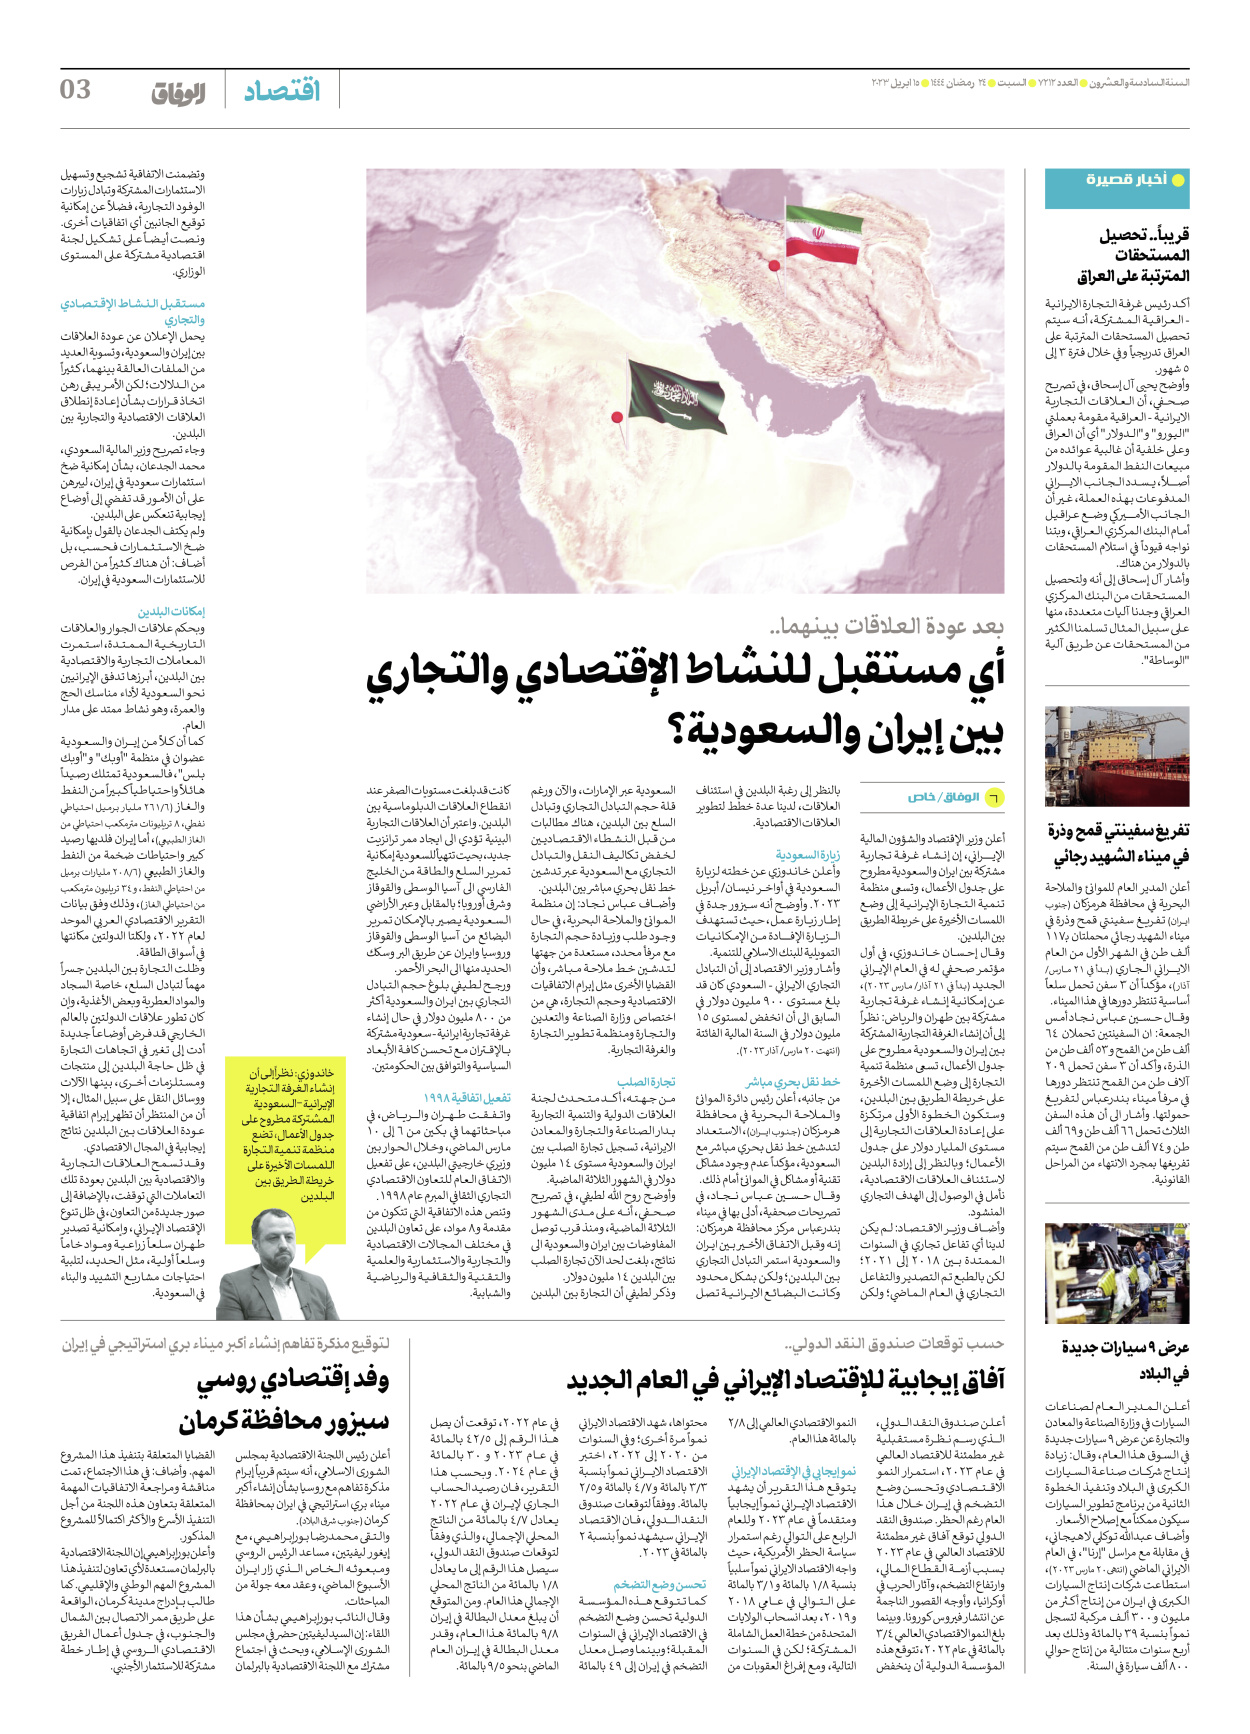 صحیفة ایران الدولیة الوفاق - العدد سبعة آلاف ومائتان واثنا عشر - ١٥ أبريل ٢٠٢٣ - الصفحة ۳